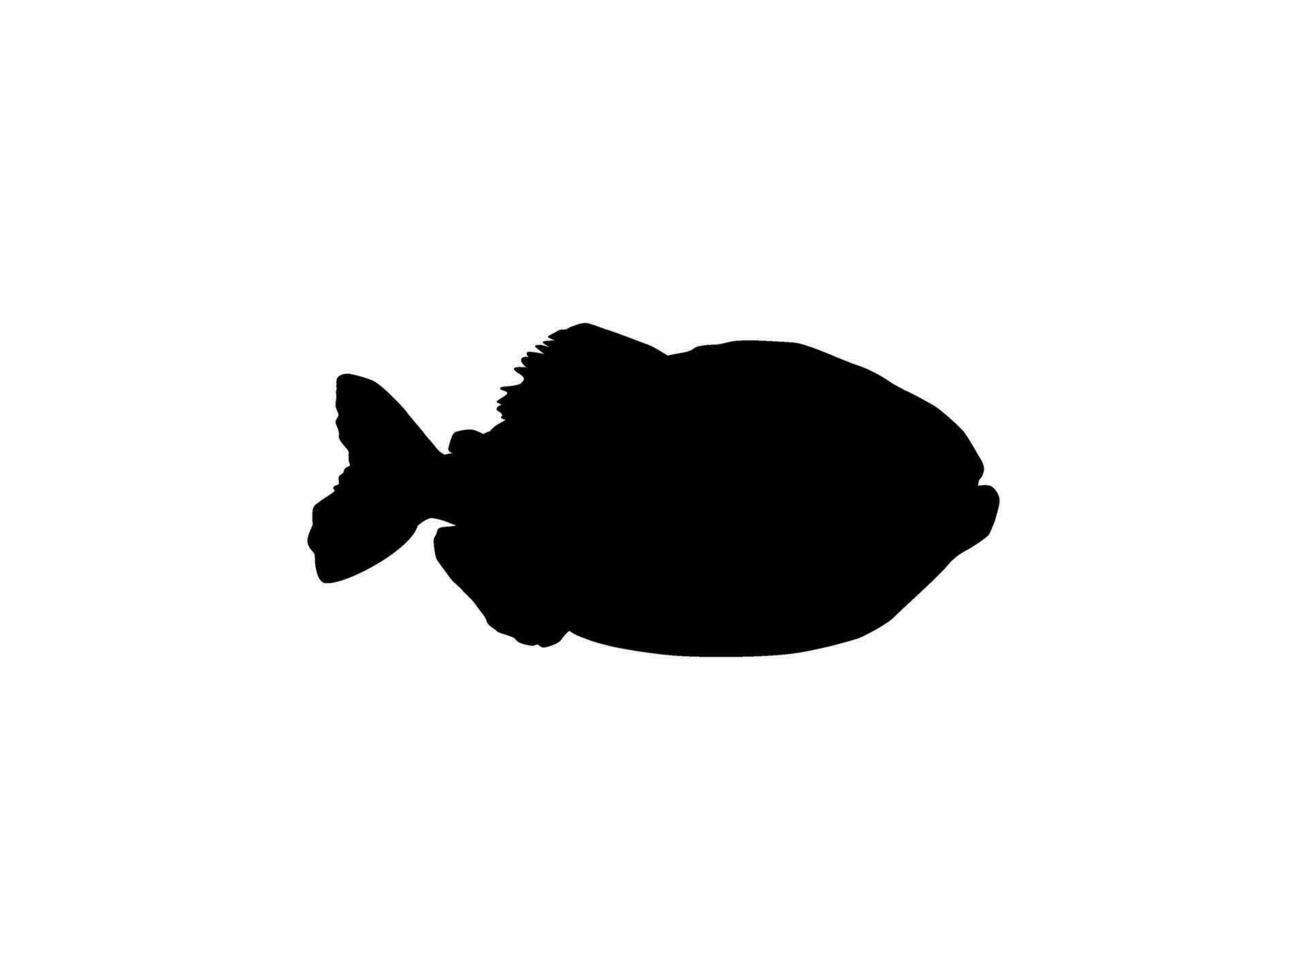 piranha vis silhouet, kan gebruik voor logo gram, website, kunst illustratie, pictogram, icoon of grafisch ontwerp element. vector illustratie